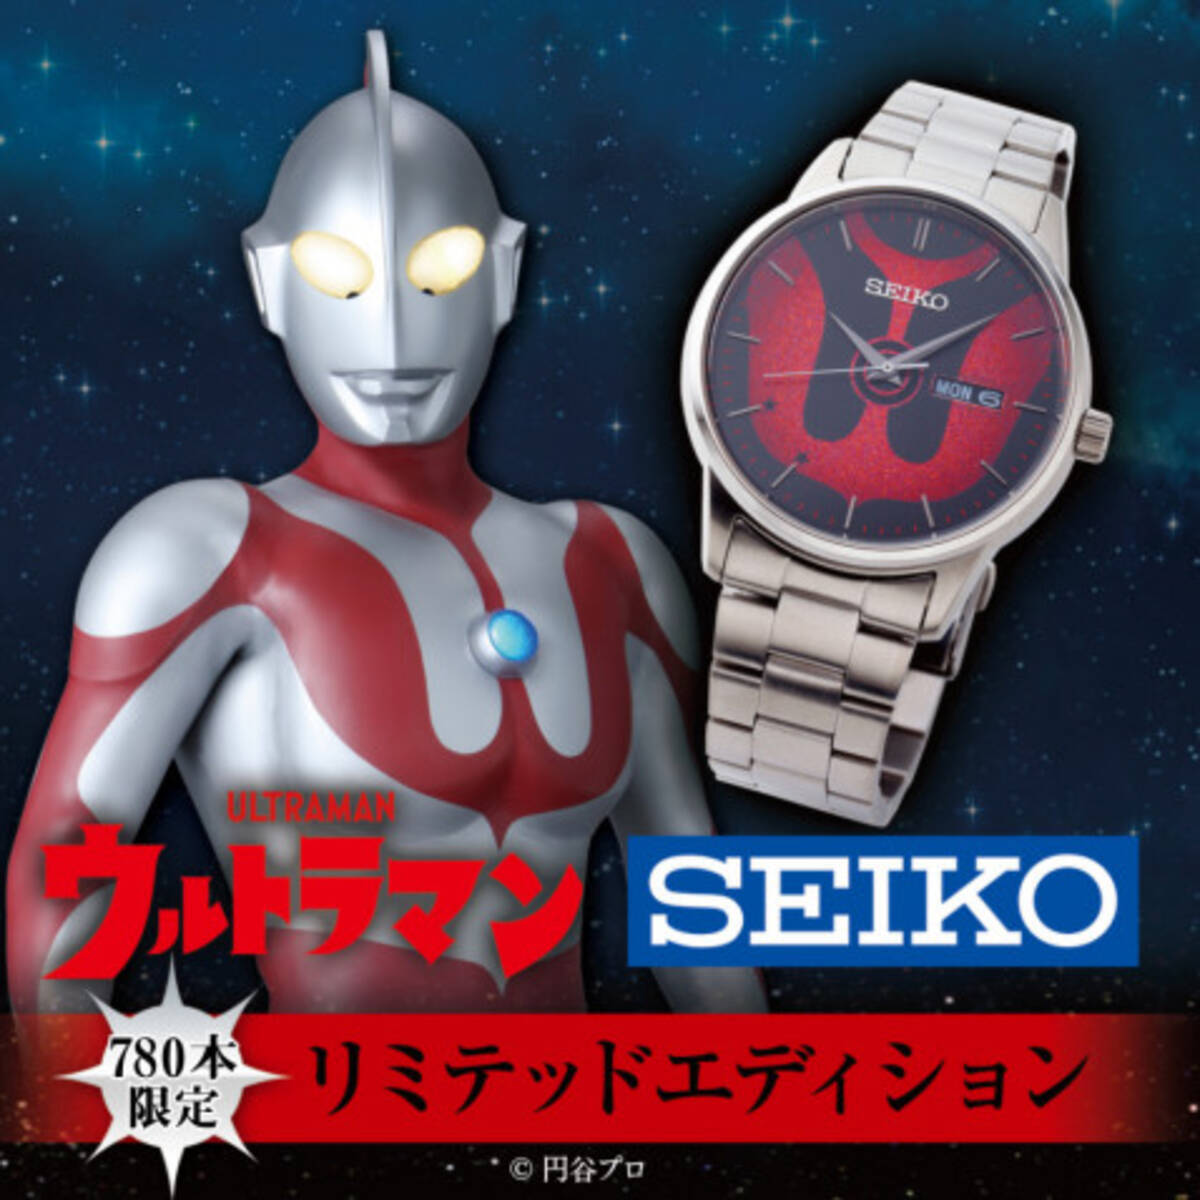 カラータイマーが光る ウルトラマン Seiko腕時計を780本限定で発売 19年10月16日 エキサイトニュース